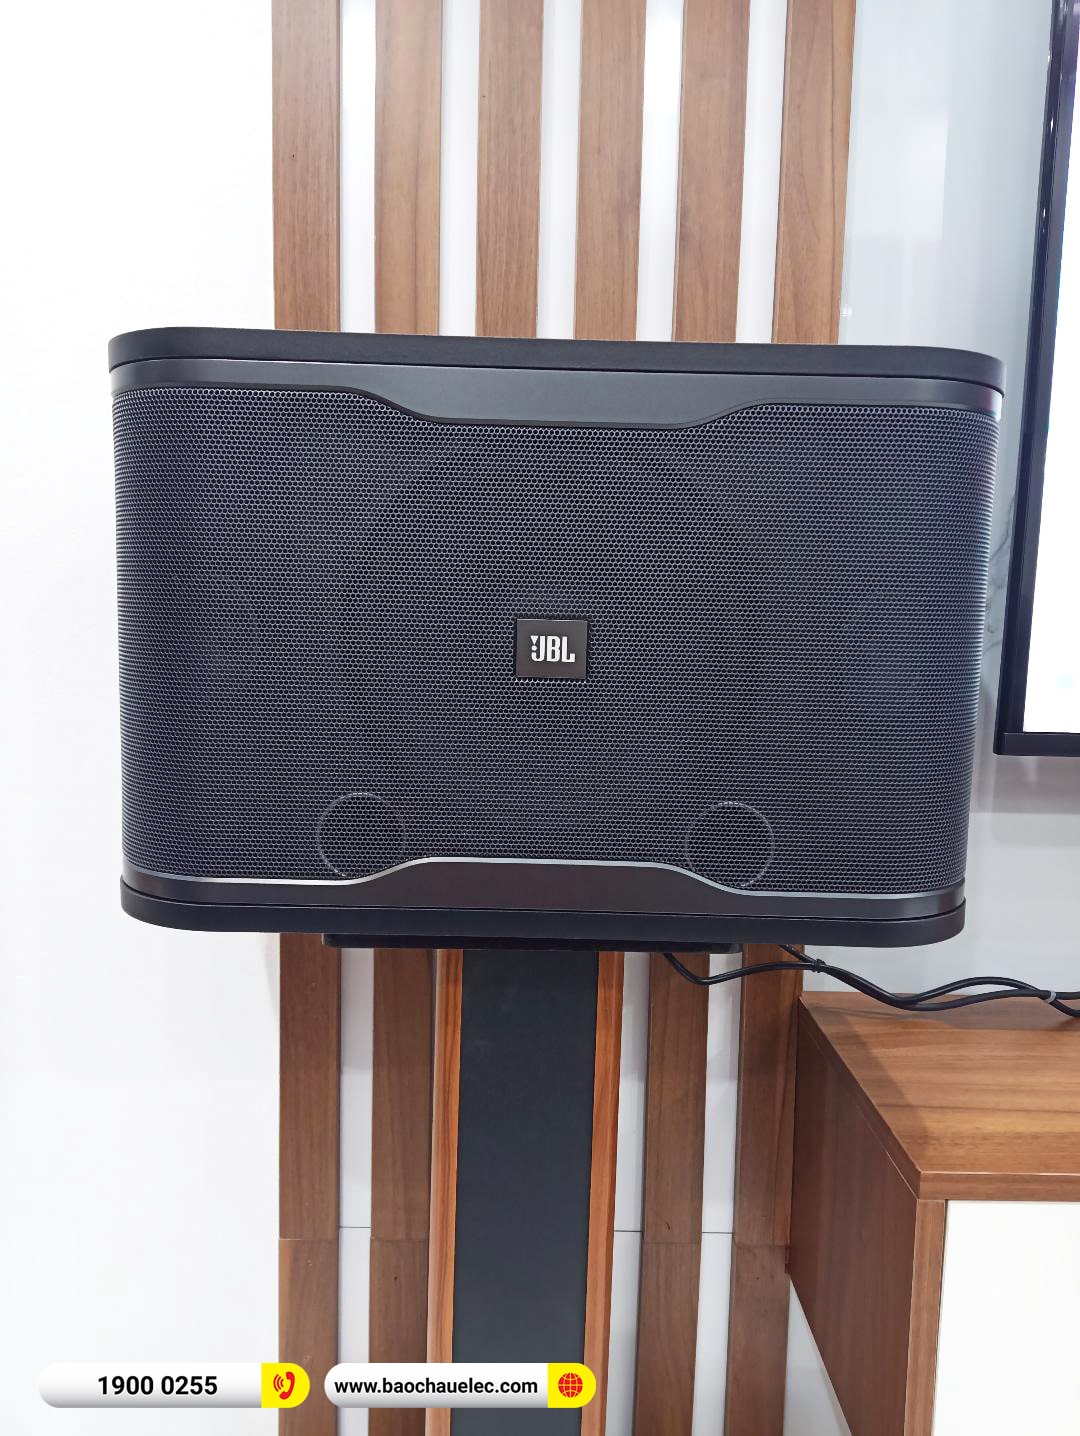 Lắp đặt dàn karaoke JBL hơn 21tr cho anh Đông tại Hà Nội (JBL RM210, KX180A, BIK BJ-U100) 